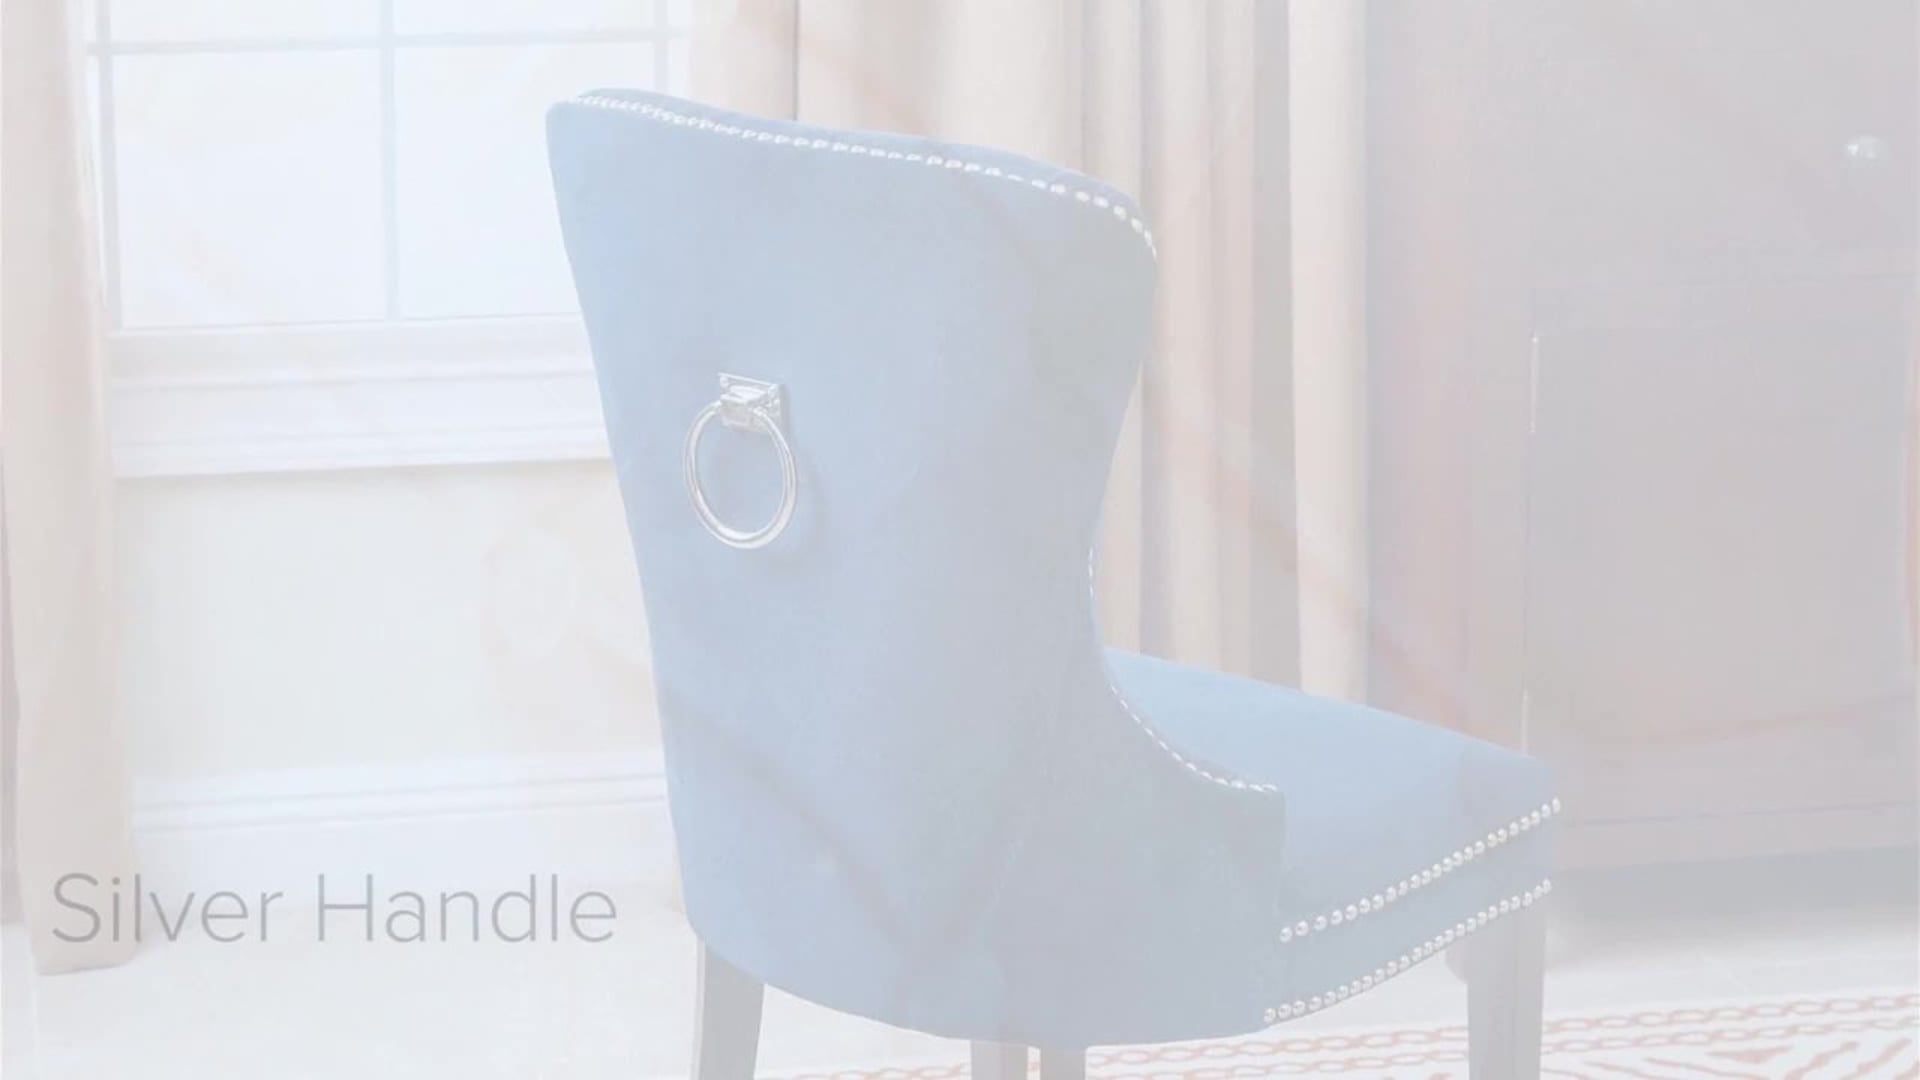 Miiko Tufted Velvet Dining Chair, Blue